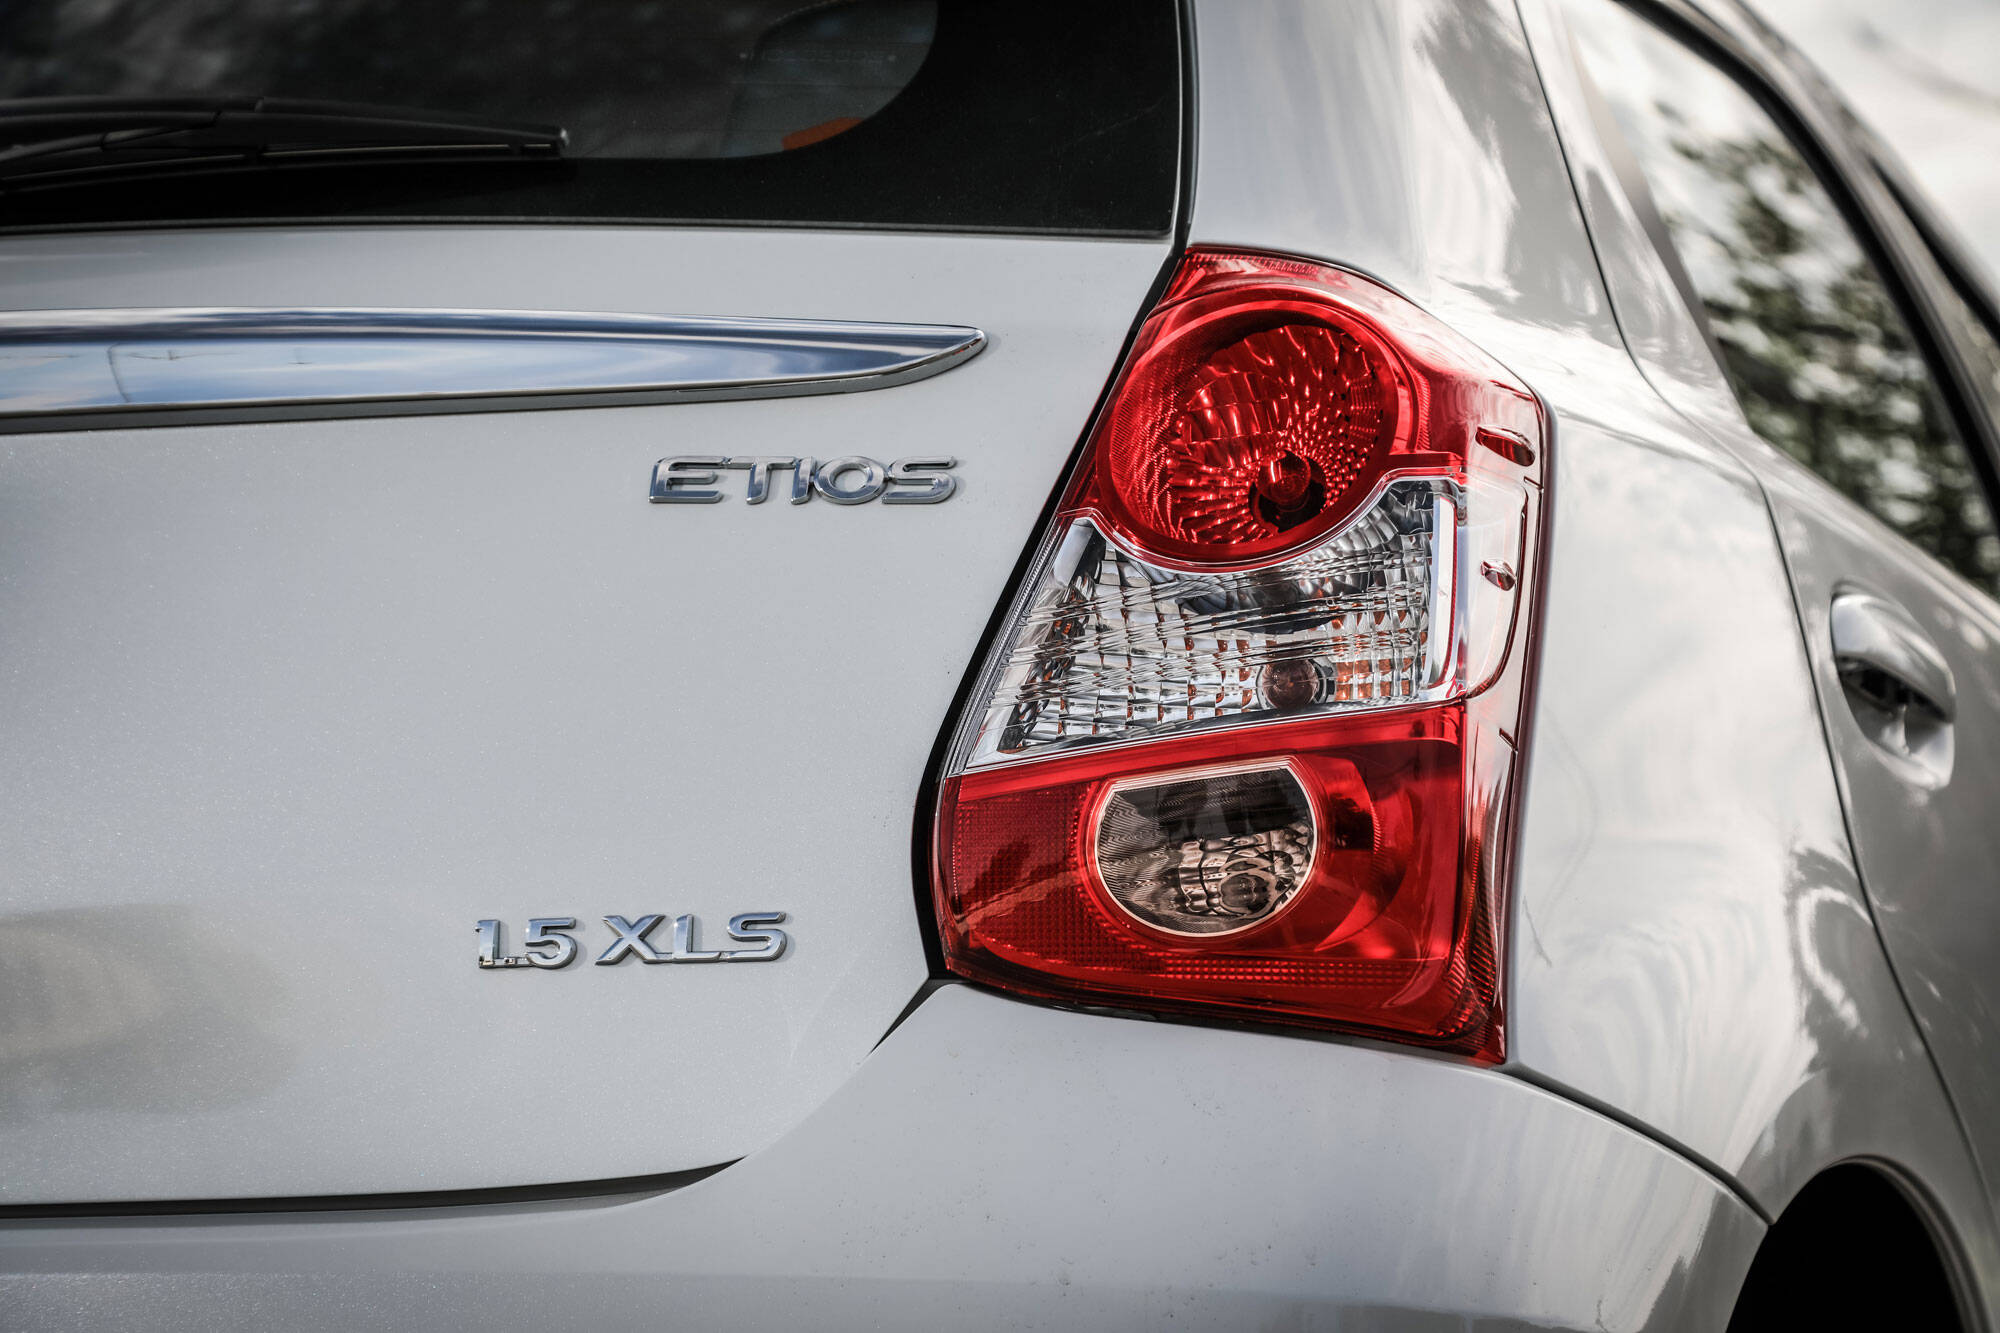 Toyota Etios 2018. Foto: Divugalção/Toyota